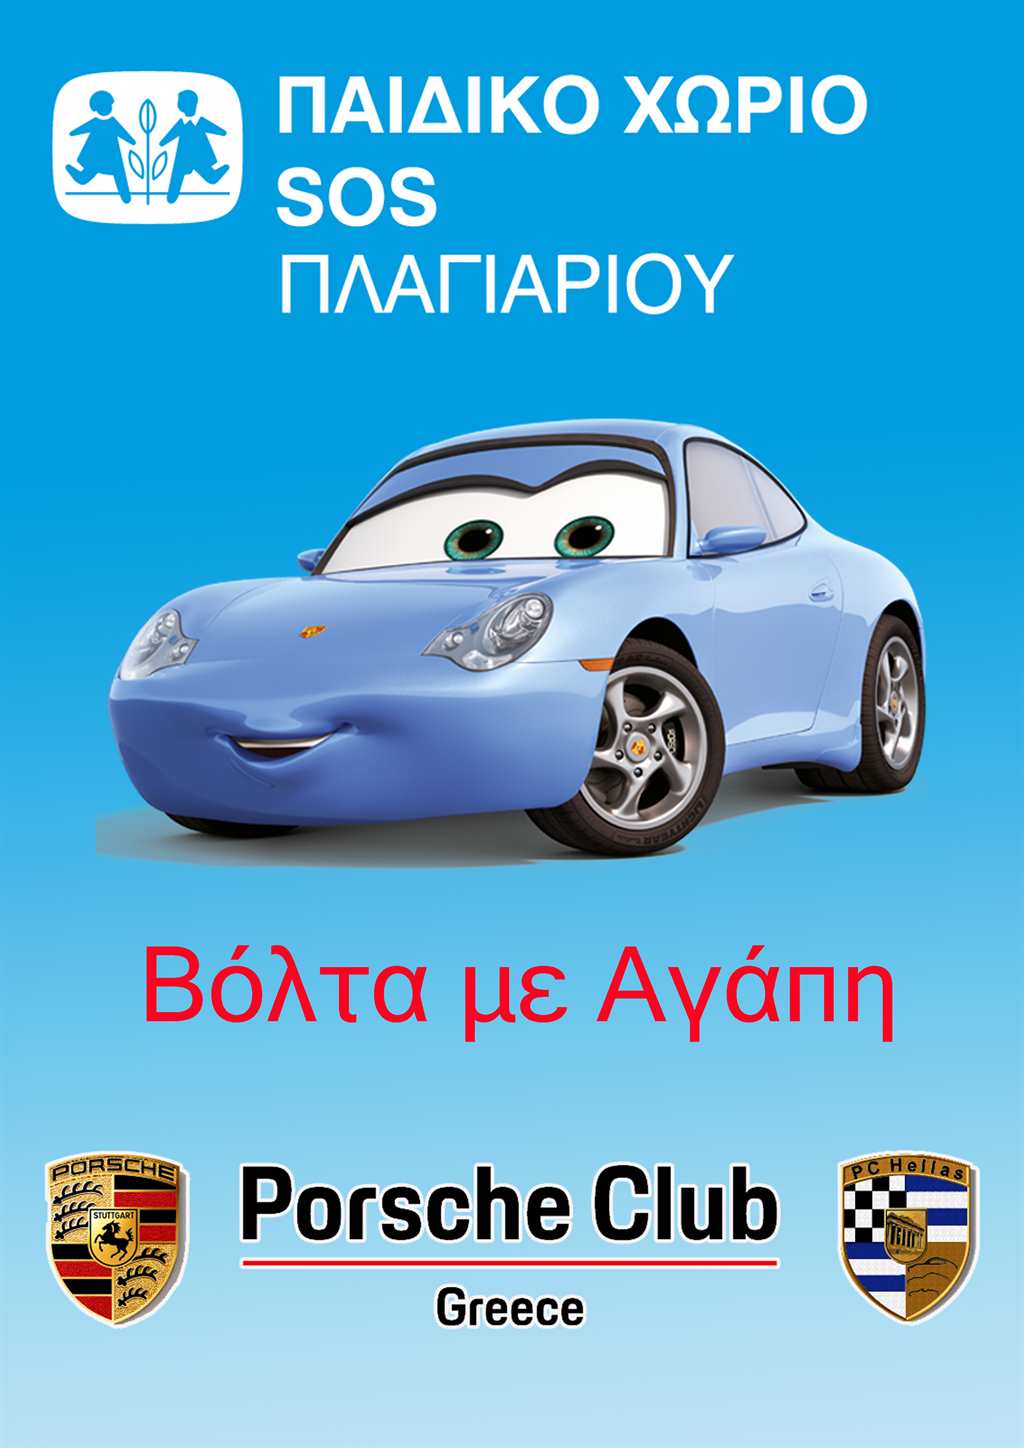  Porsche Club Greece